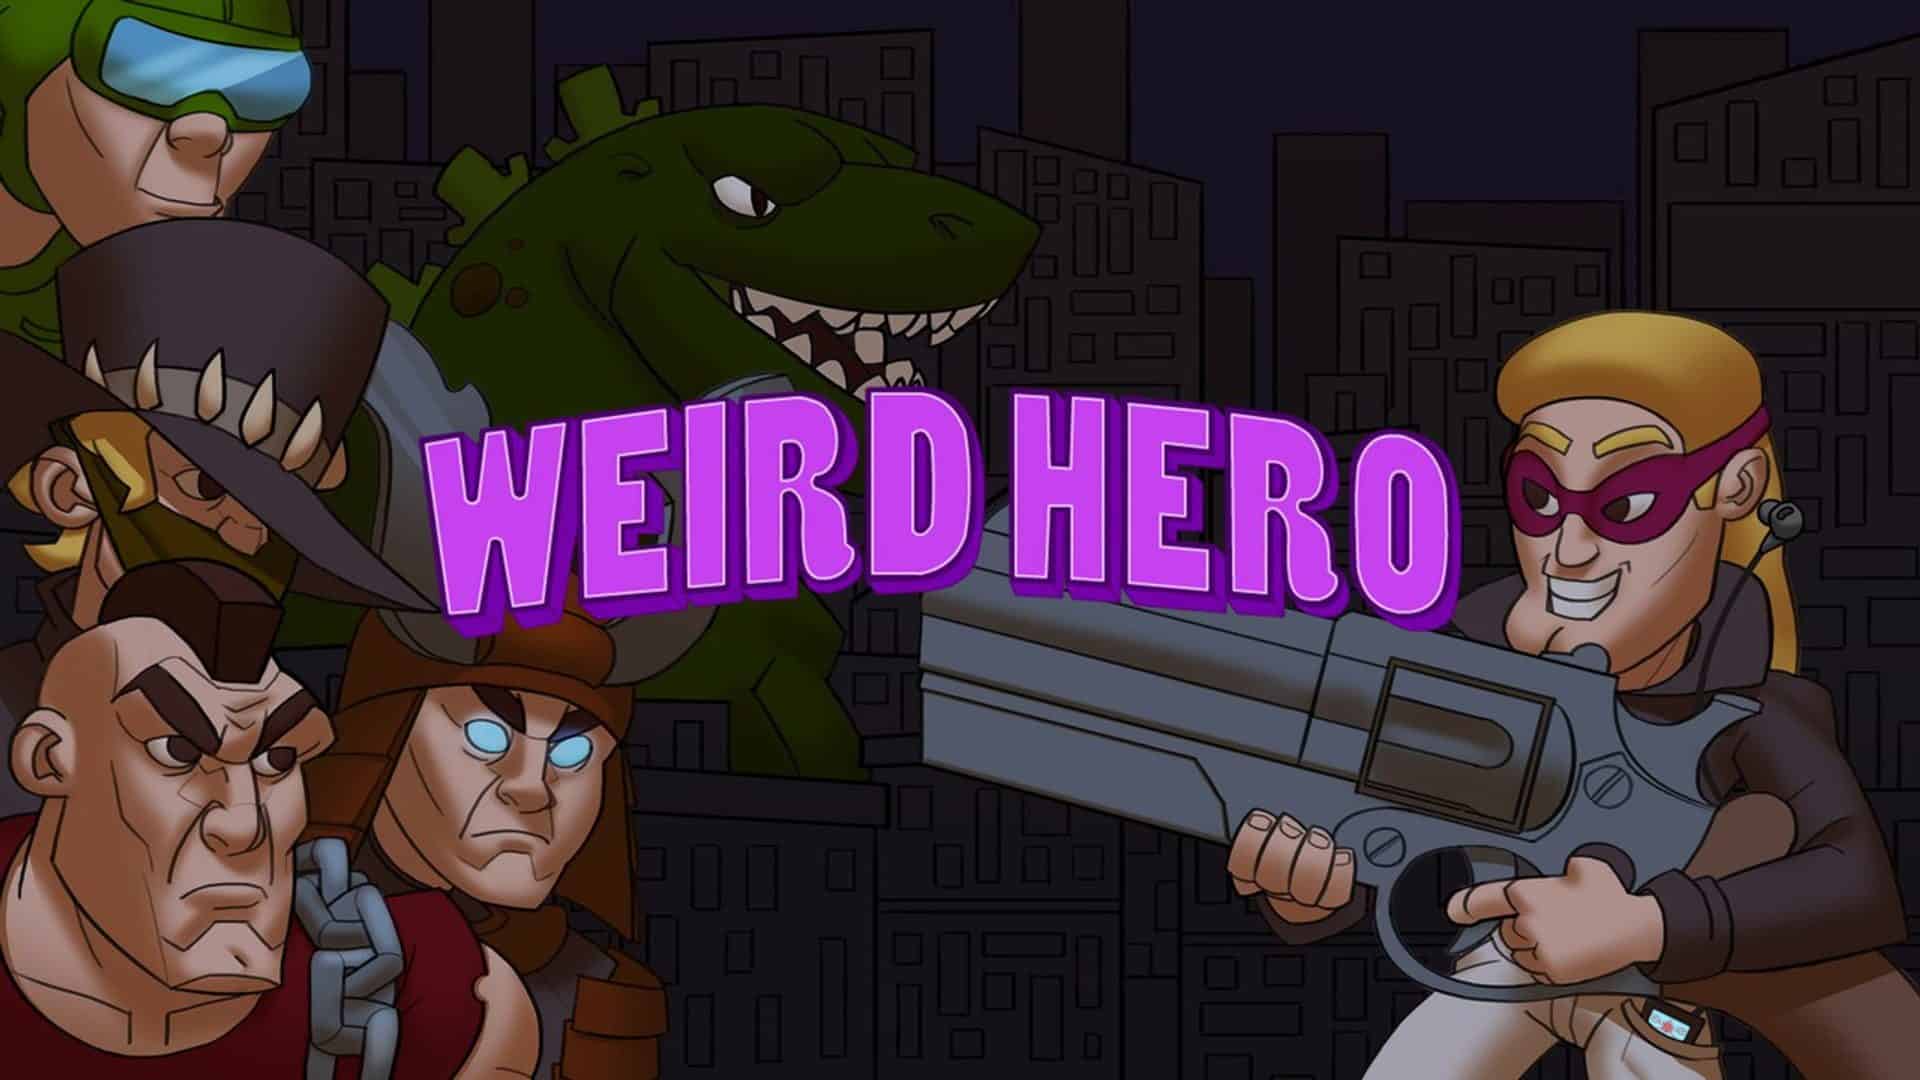 Weird Hero